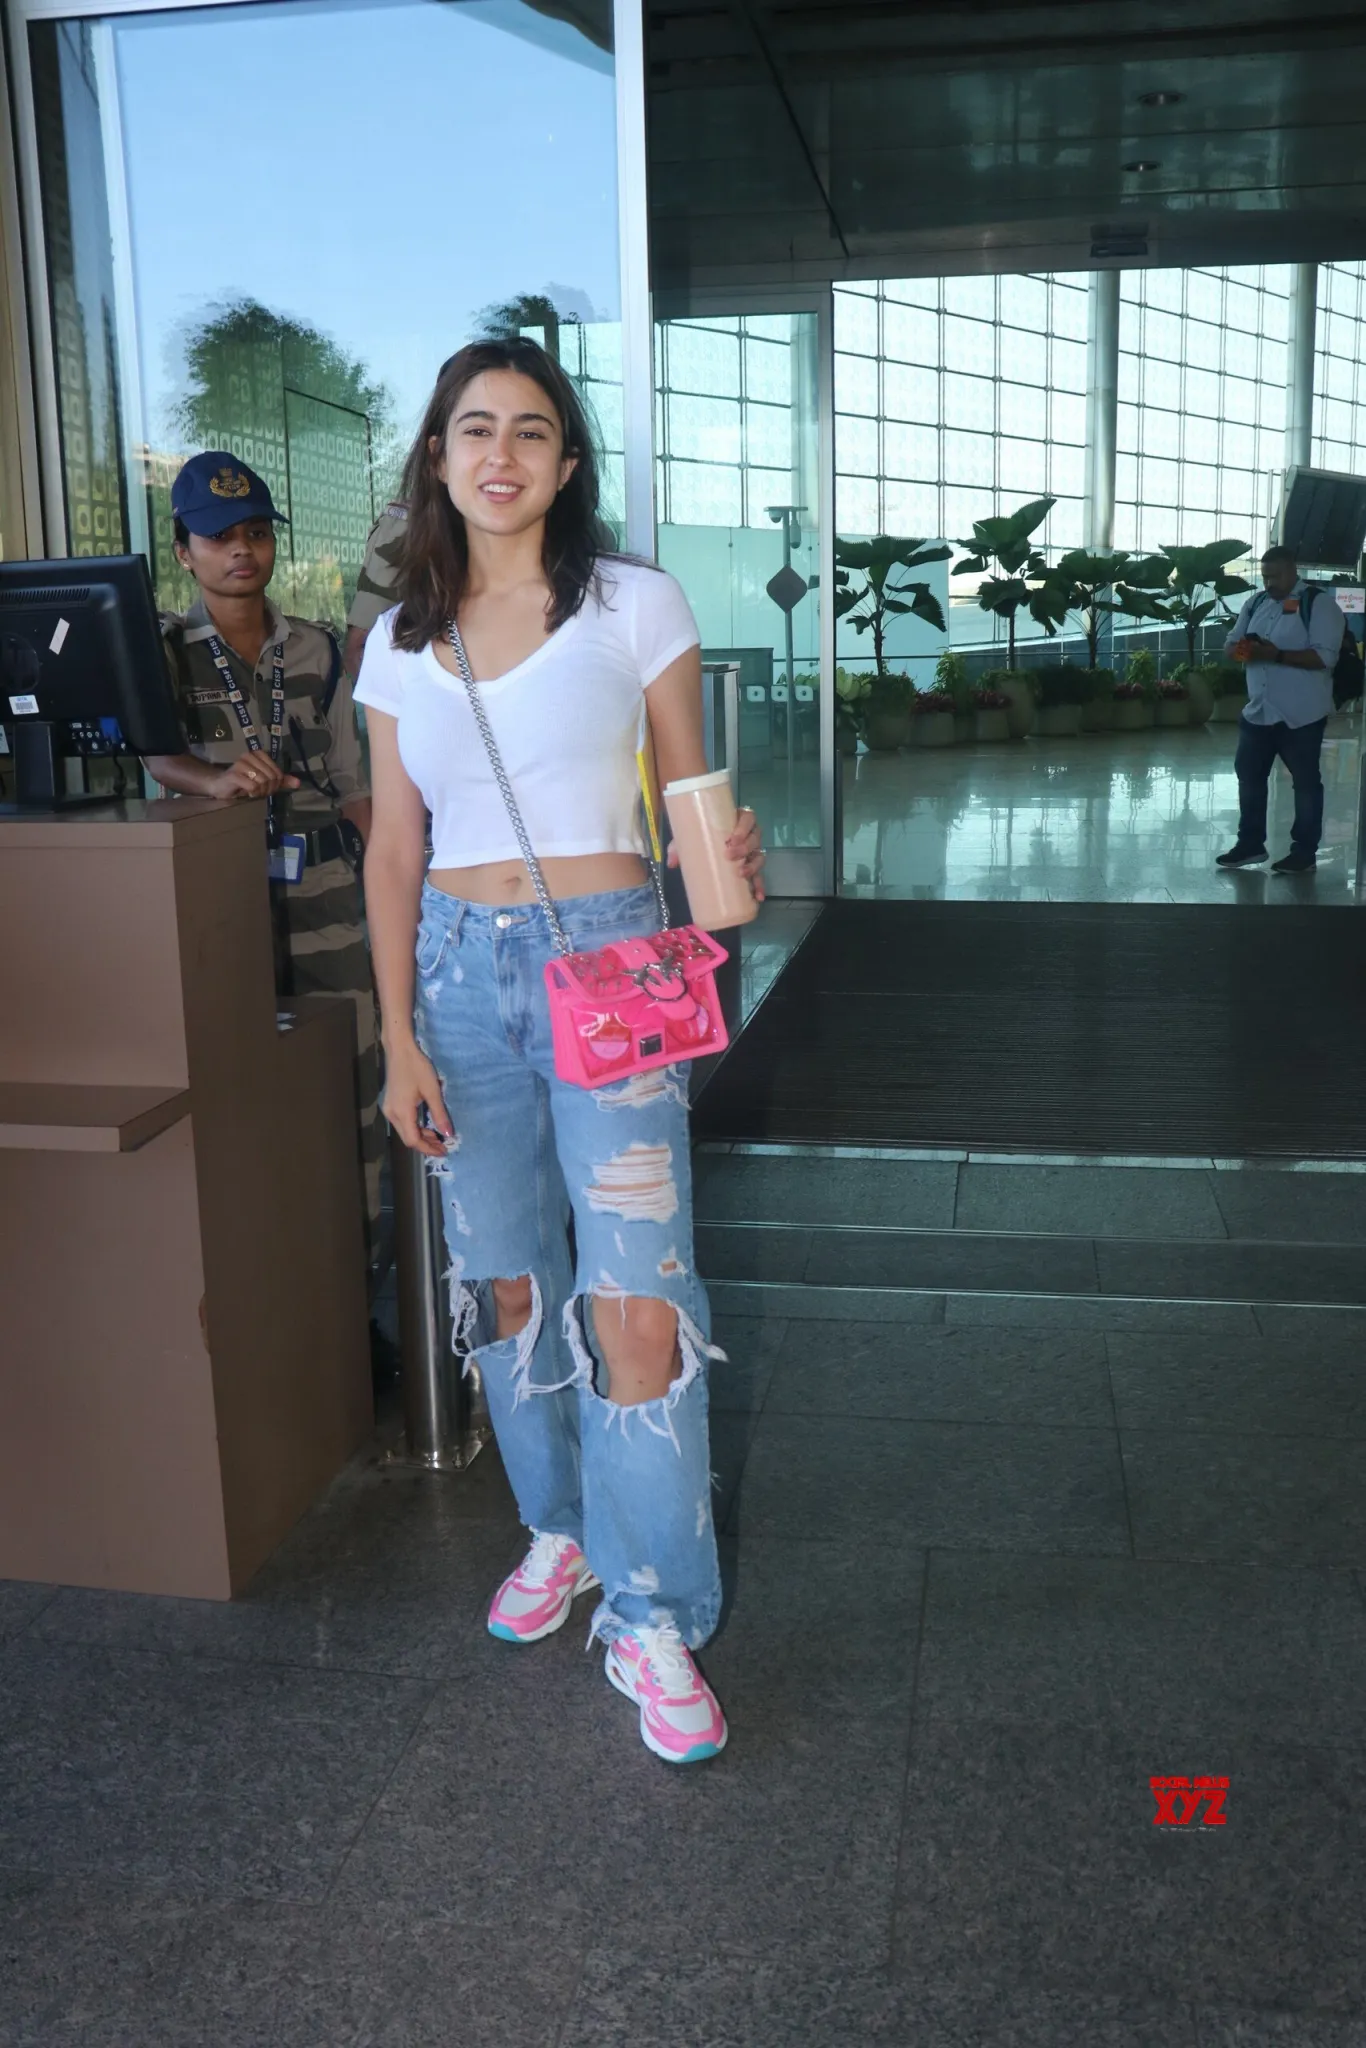 मुंबई एयरपोर्ट पर नो मेकअप लुक में नजर आईं Sara Ali Khan,ऐसा लुक देख कर फैंस हो गए फ़िदा